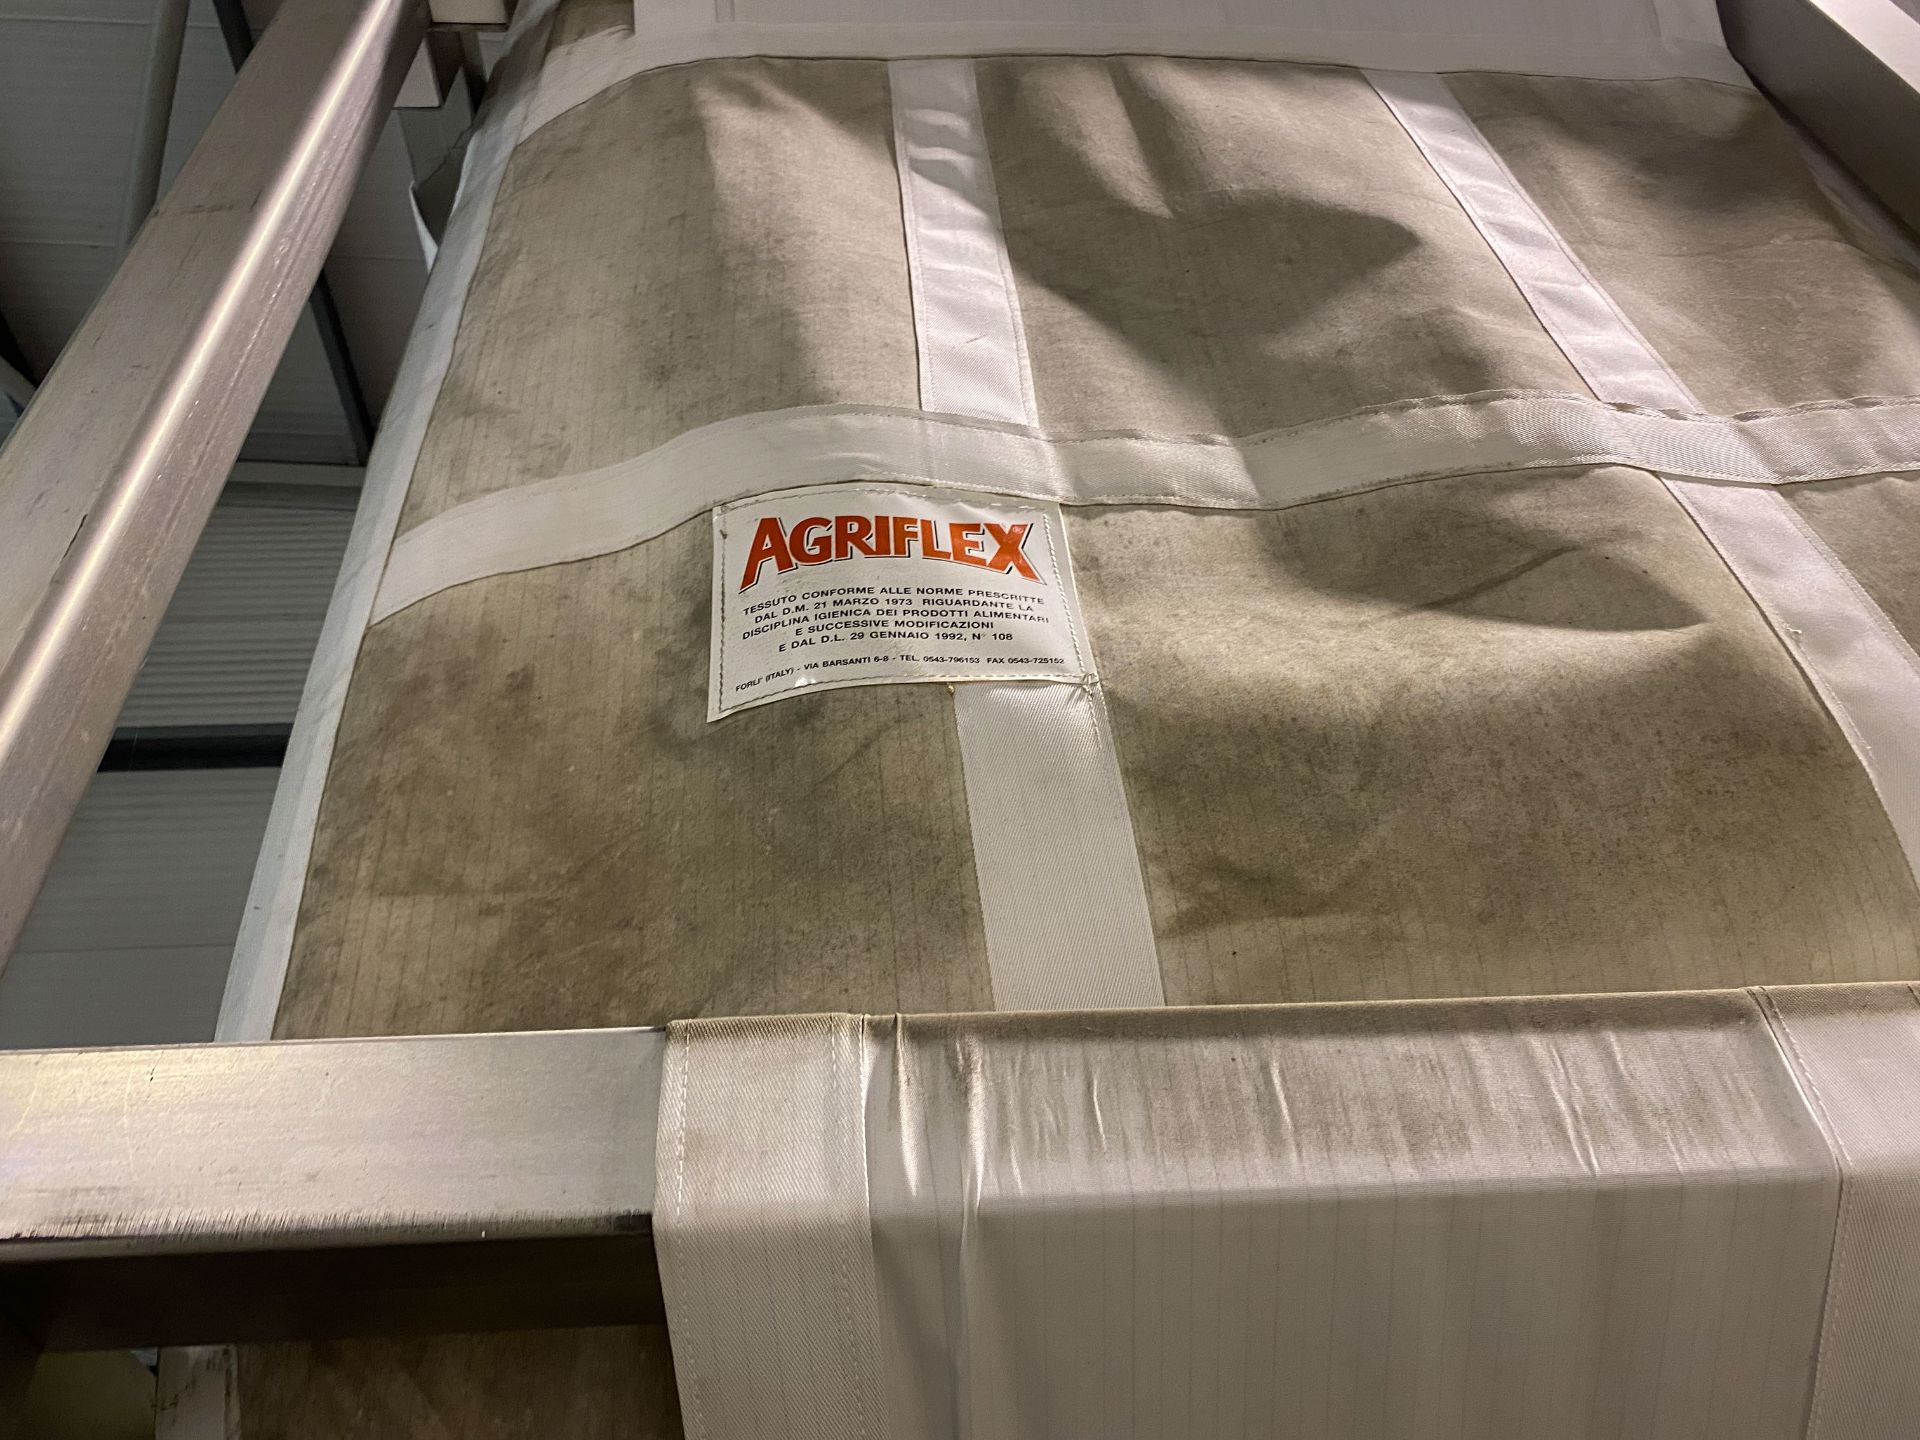 2x Agriflex Aluminium Framed Fabric Flour Silos - Image 2 of 7